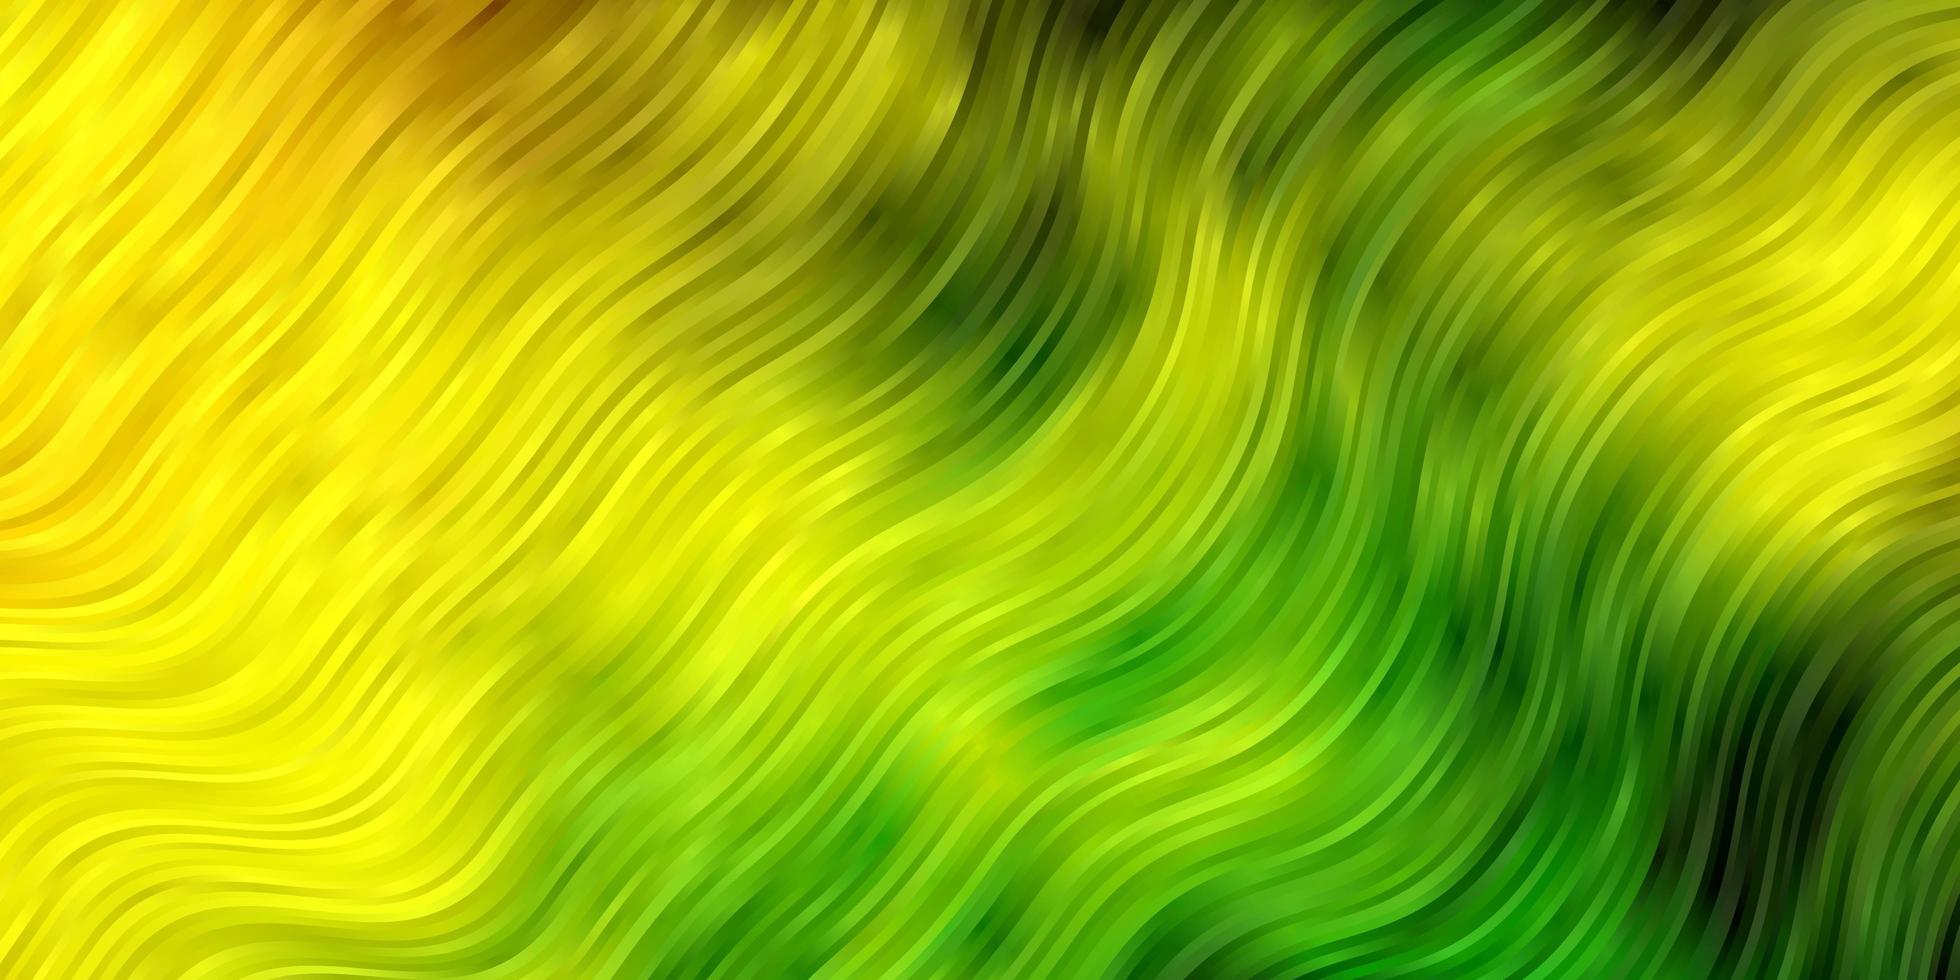 ljusgrön gul bakgrund med sneda linjer vektor